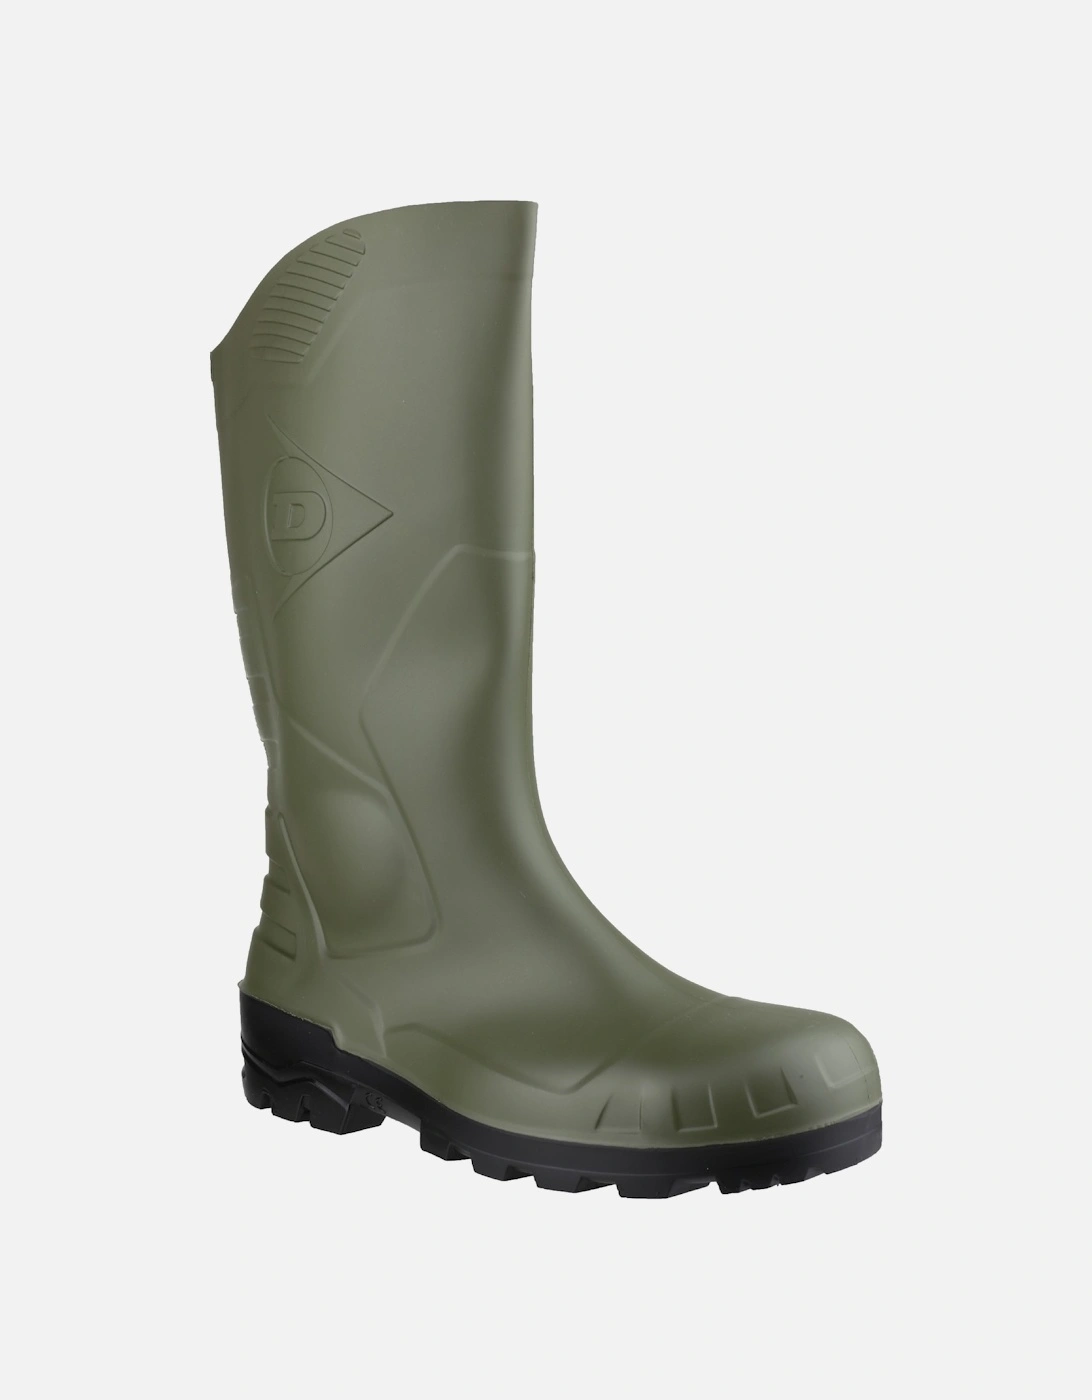 Devon Unisex Green Safety Wellington Boots, 6 of 5